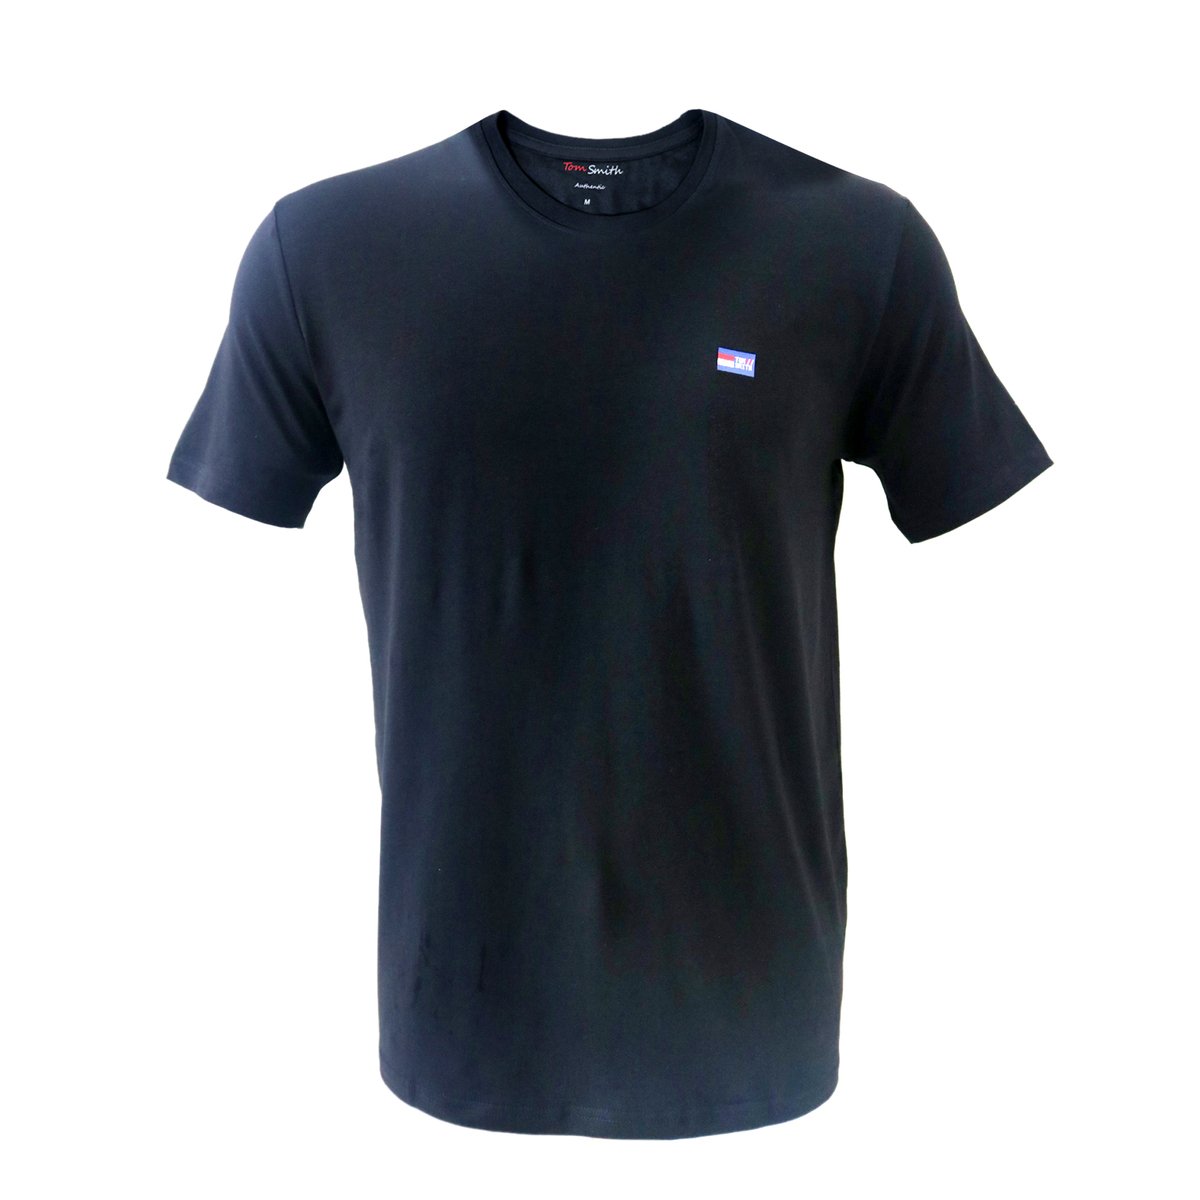 Tom Smith Basic Round Neck T-Shirt Black - M